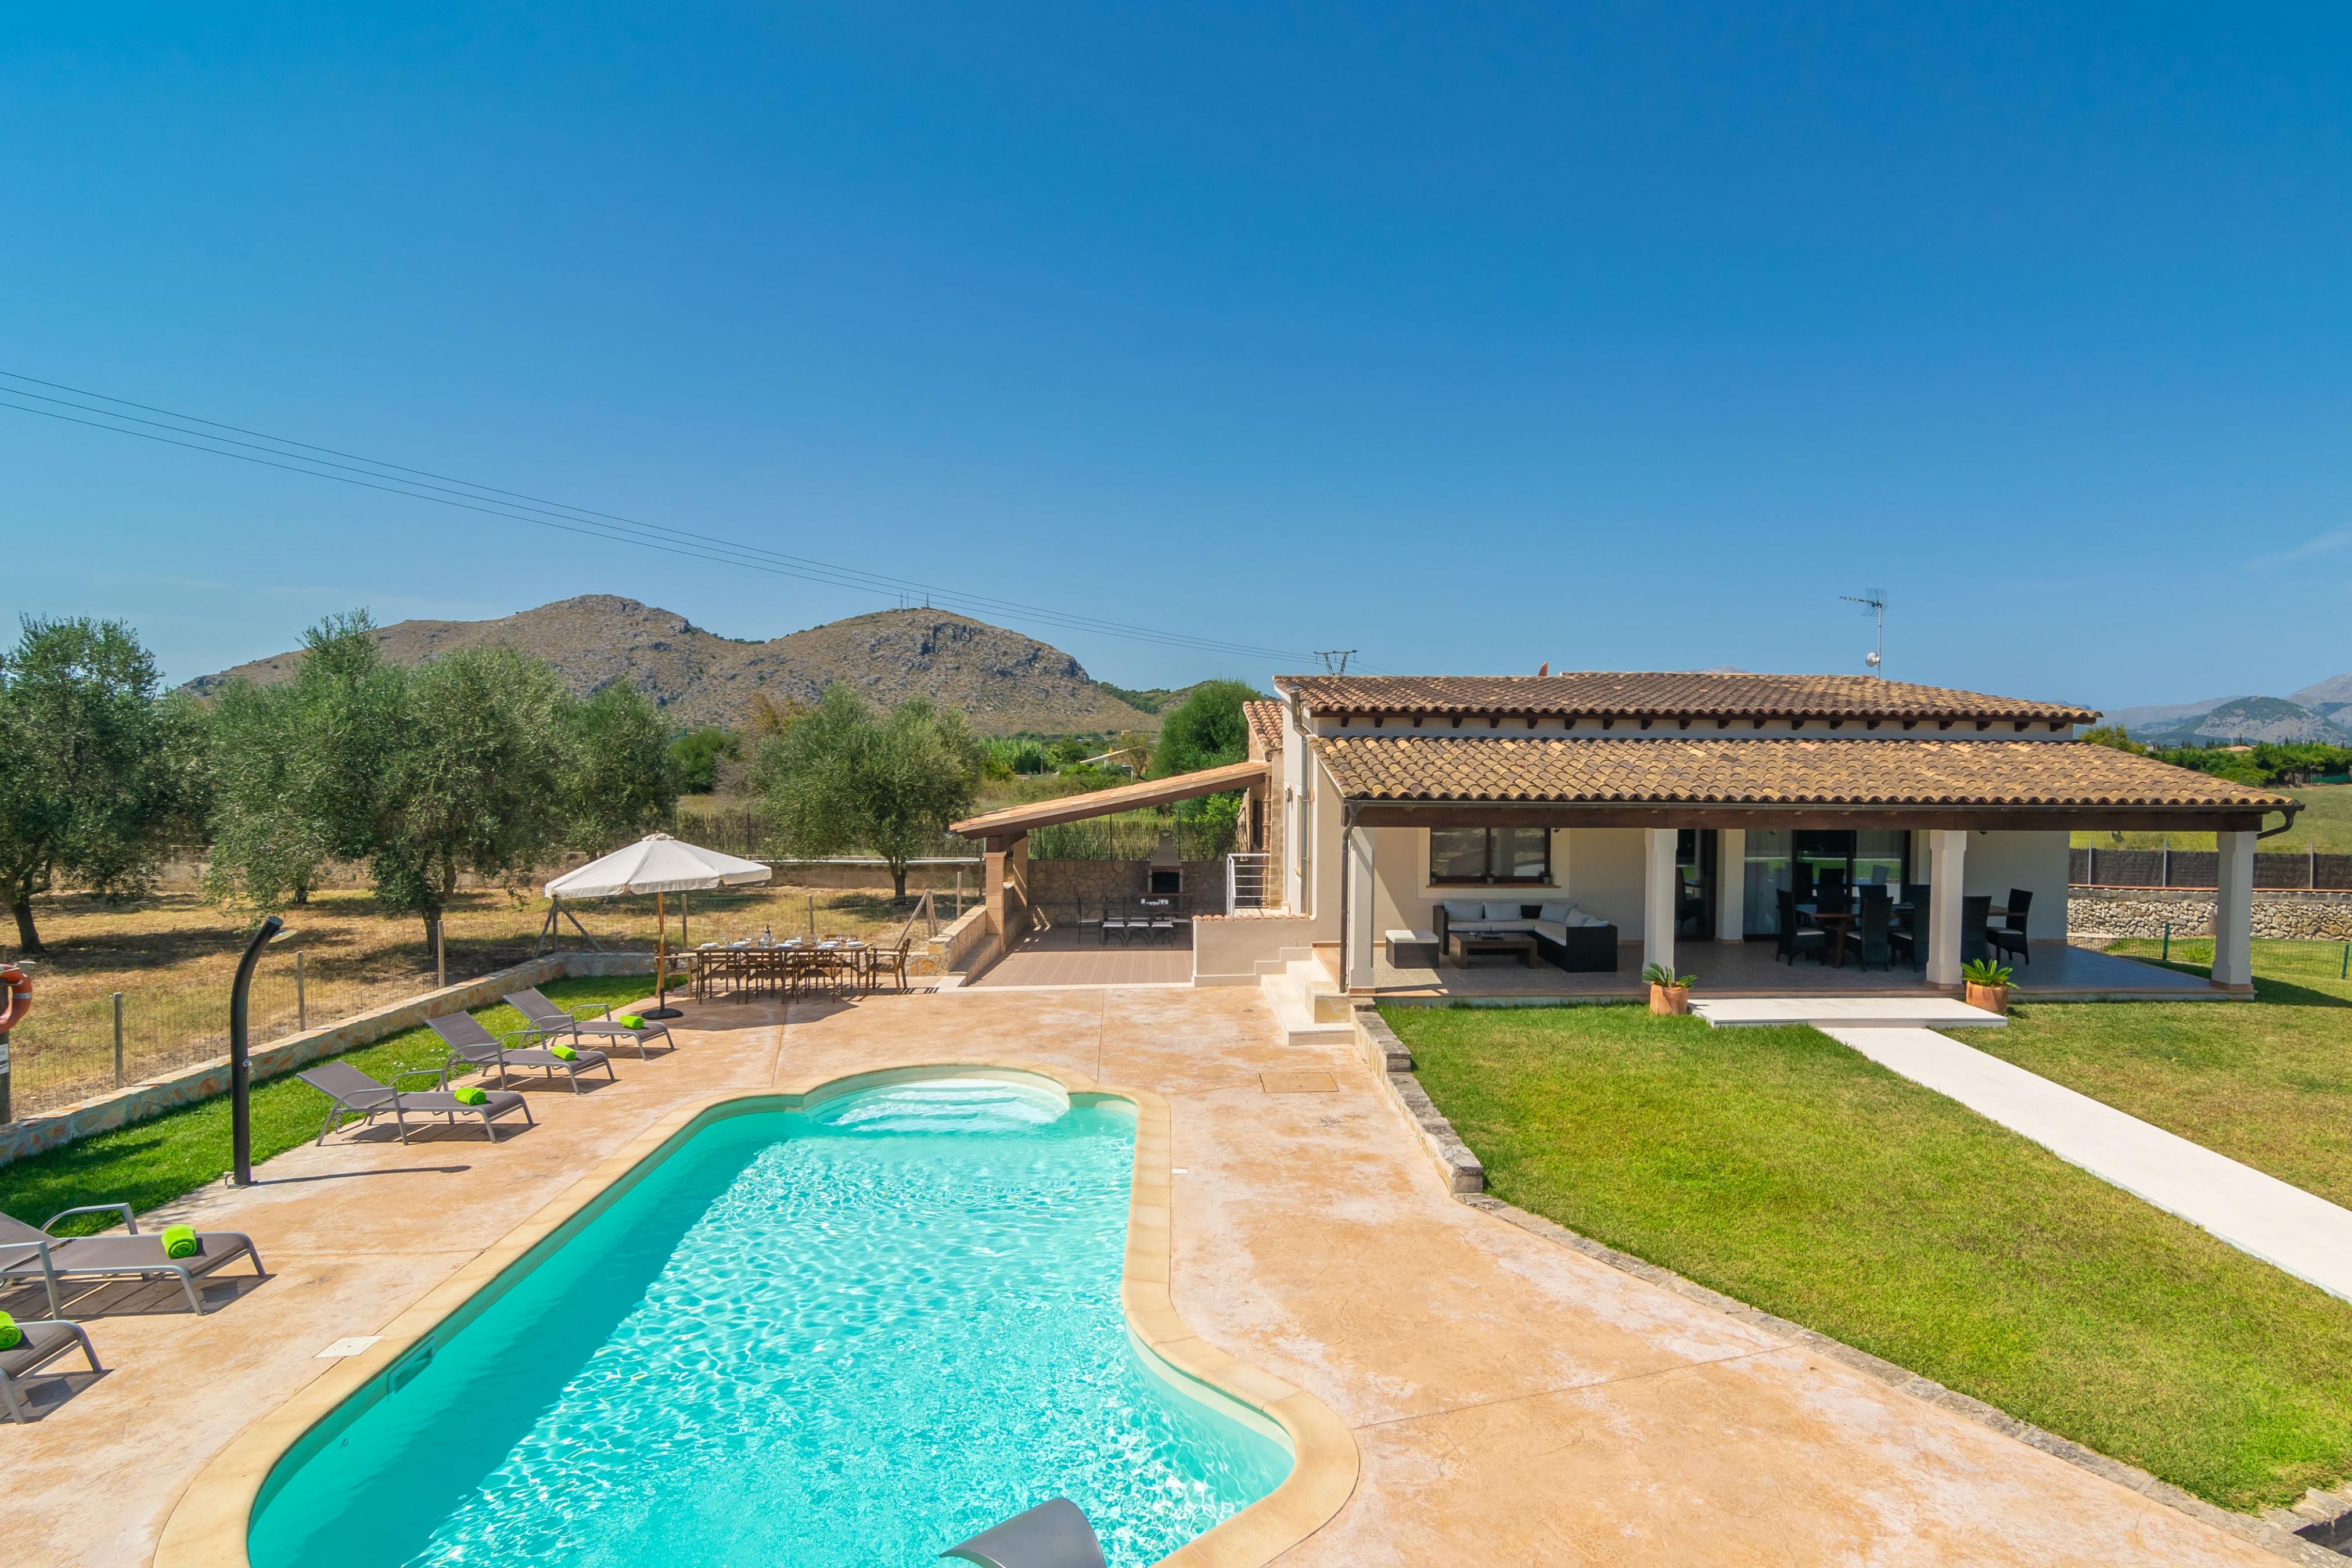 Property Image 2 - VILLA COIRA - Spectacular villa with private pool, garden and mountains views, near the beach of Puerto de